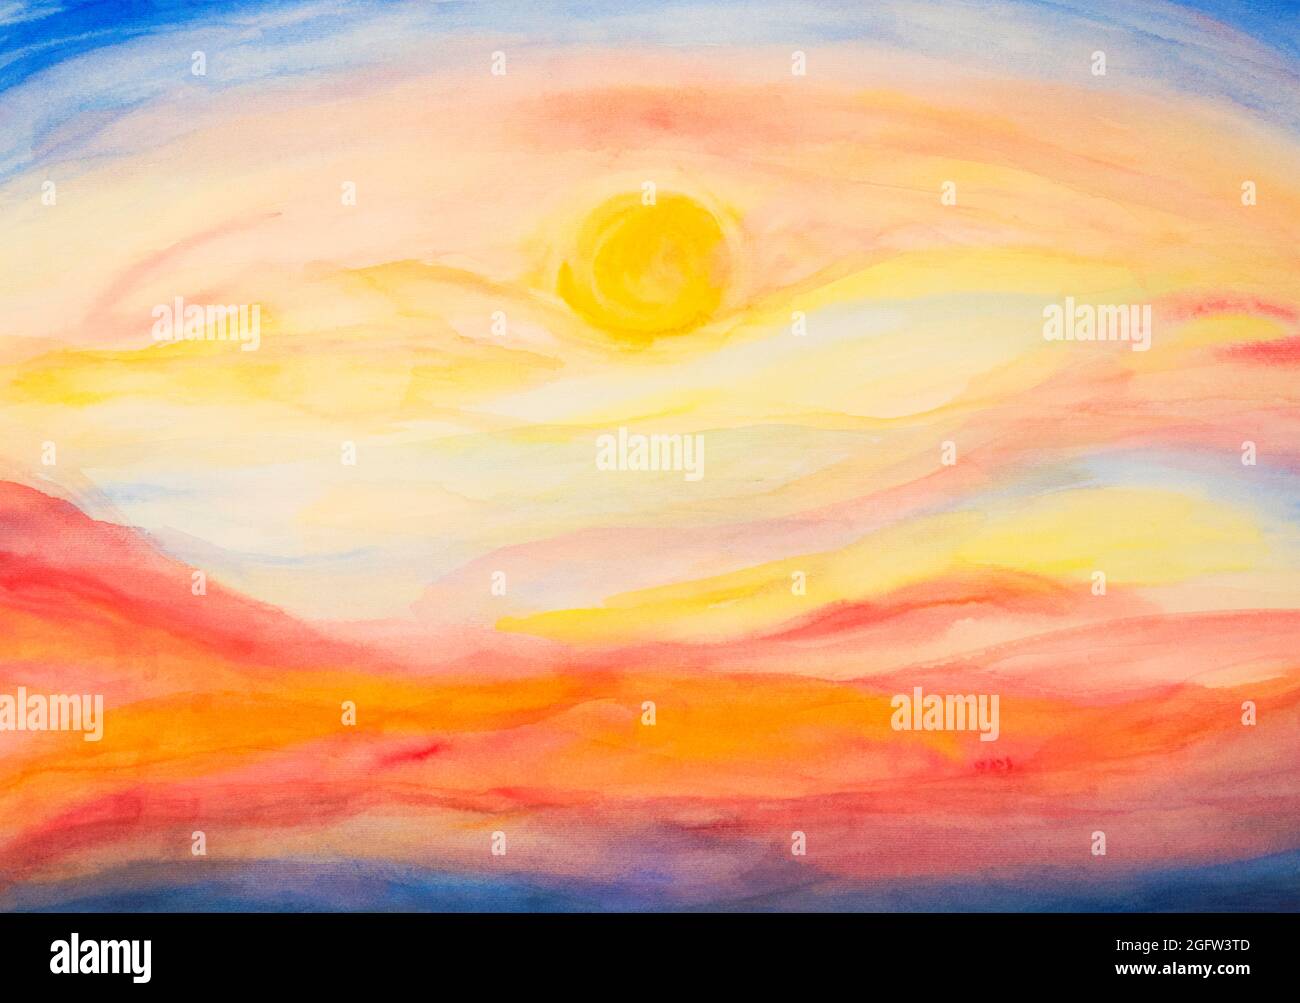 Helle bunte abstrakte Sonnenuntergang oder Sonnenaufgang Himmel Tapete Hintergrund handbemalt mit Aquarell. Horizontales Banner mit Himmel und Sonne in der Mitte. Stockfoto